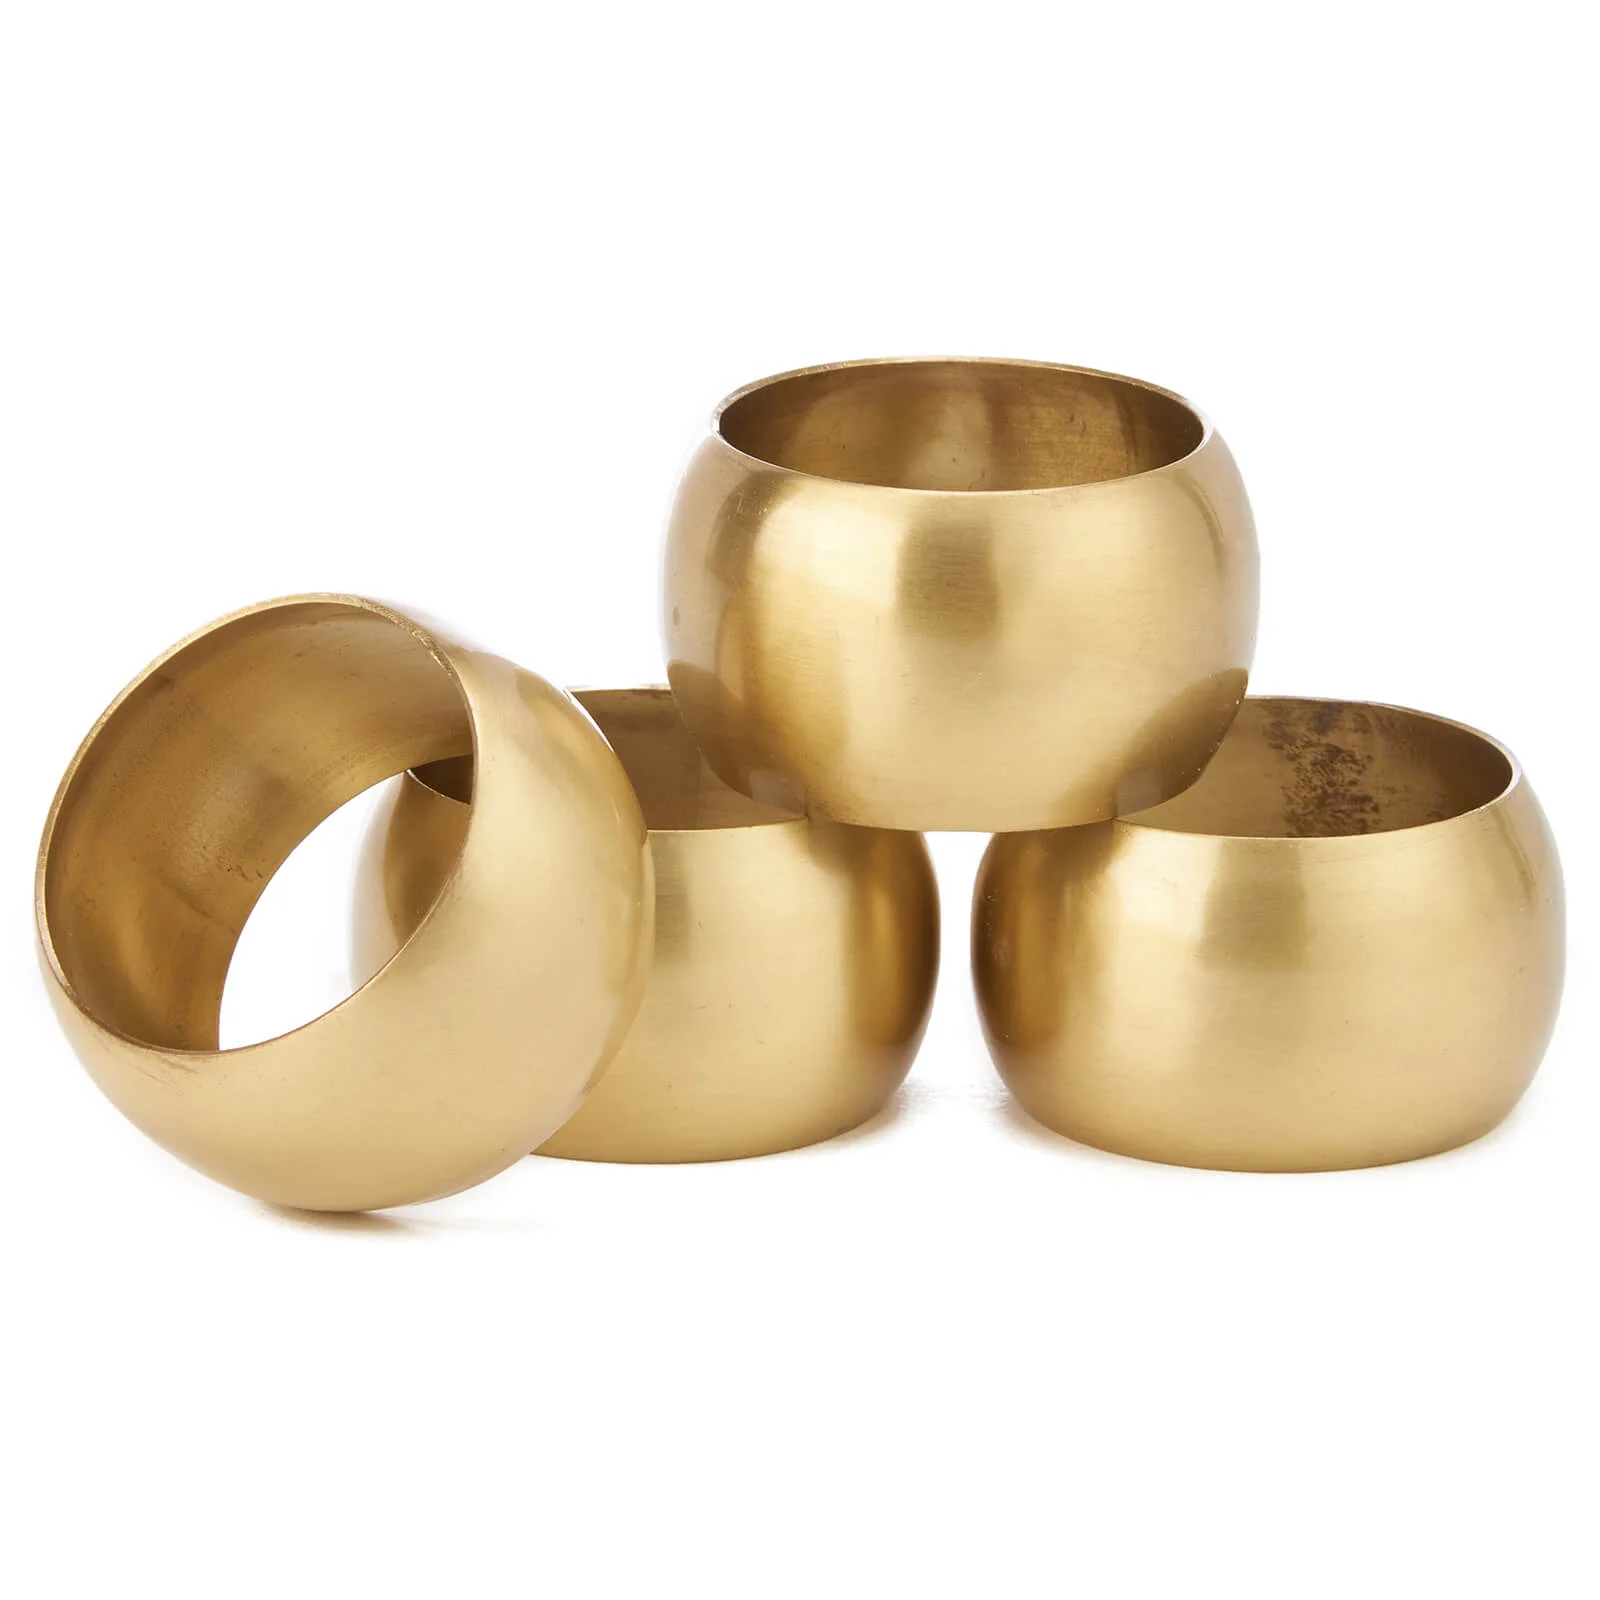 Nkuku Kiban Napkin Ring - Antique Brass (Set of 4) Image 1